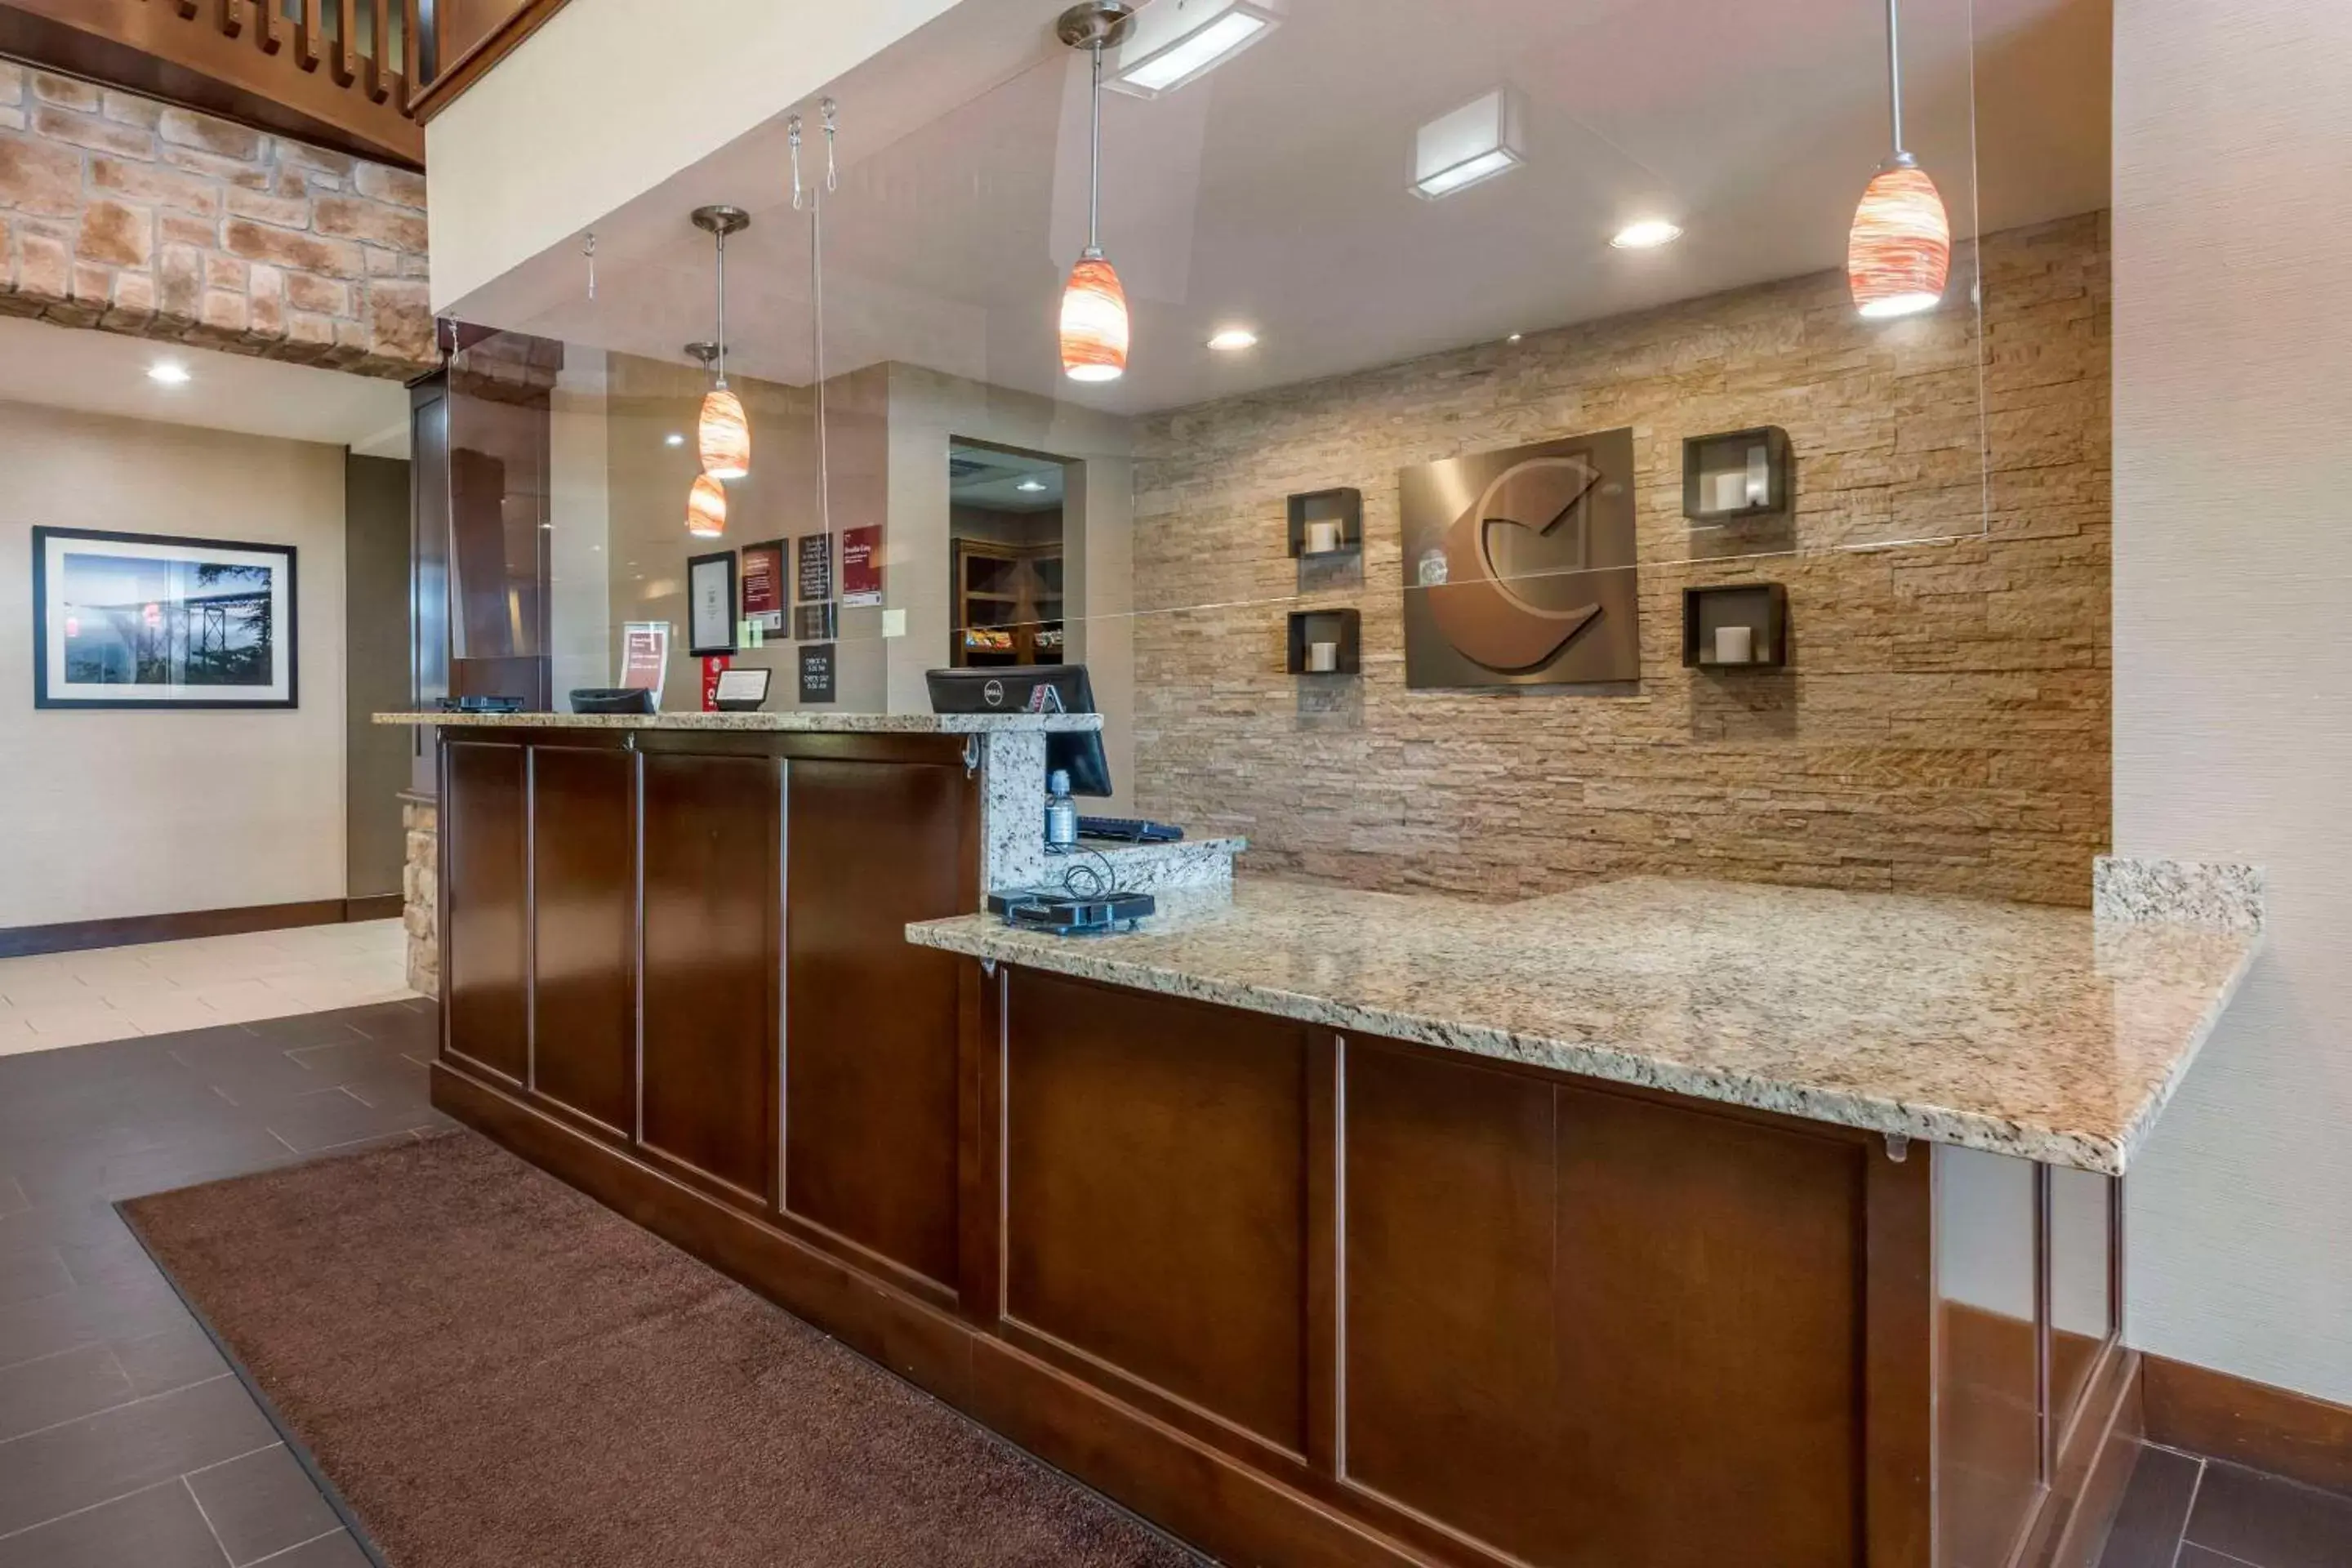 Lobby or reception in Comfort Suites Bridgeport - Clarksburg